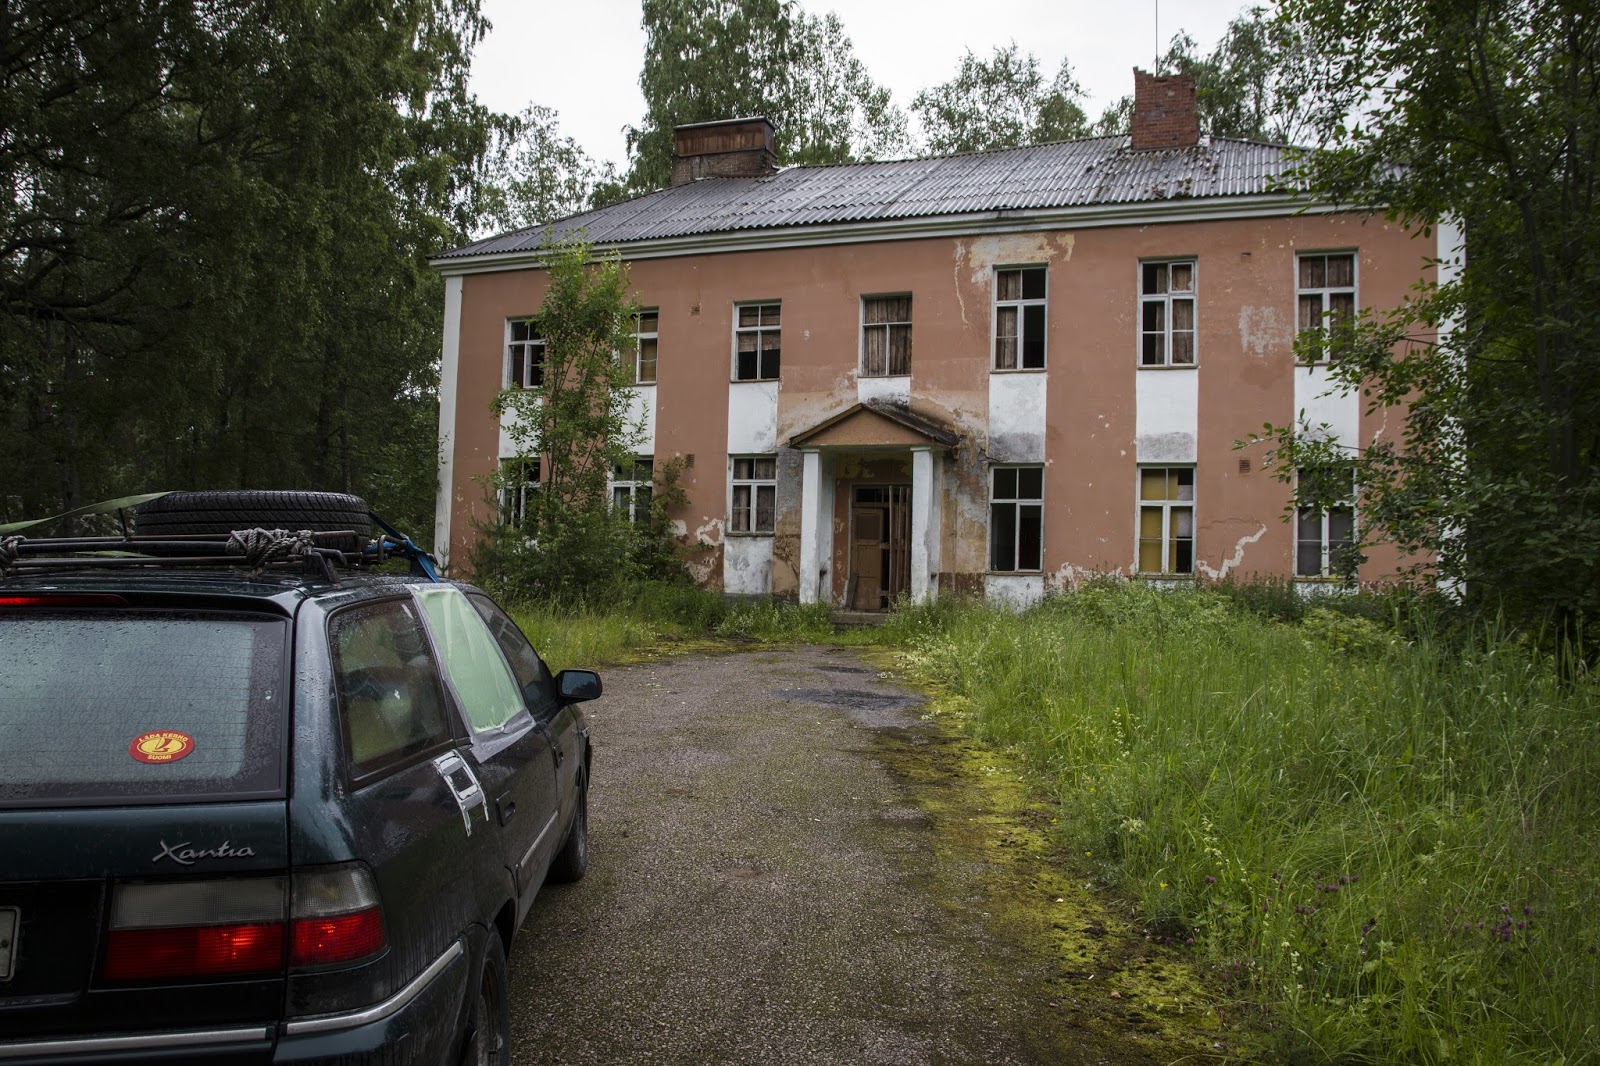 2015. Uusikylä. Former Popular School